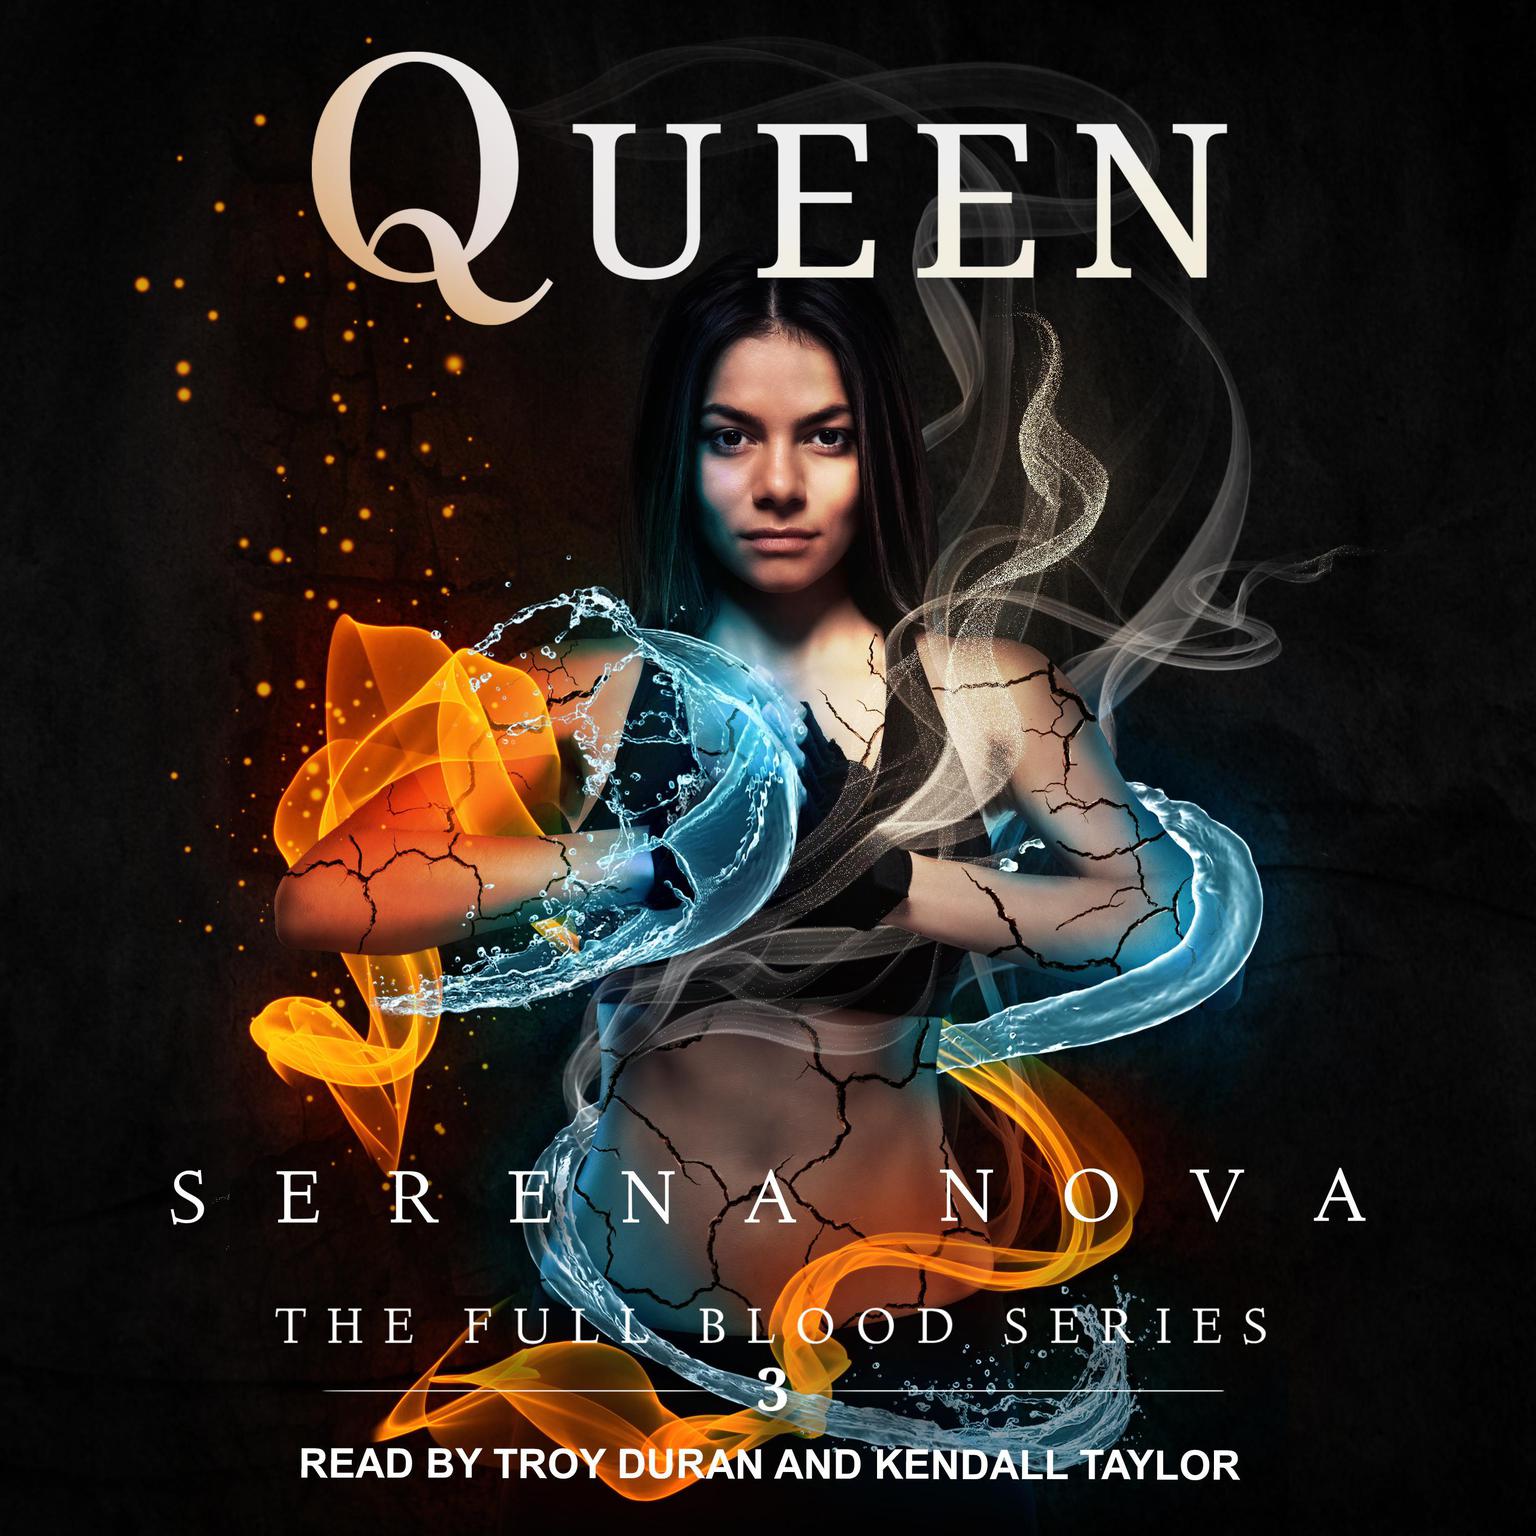 Queen Audiobook, by Serena Nova